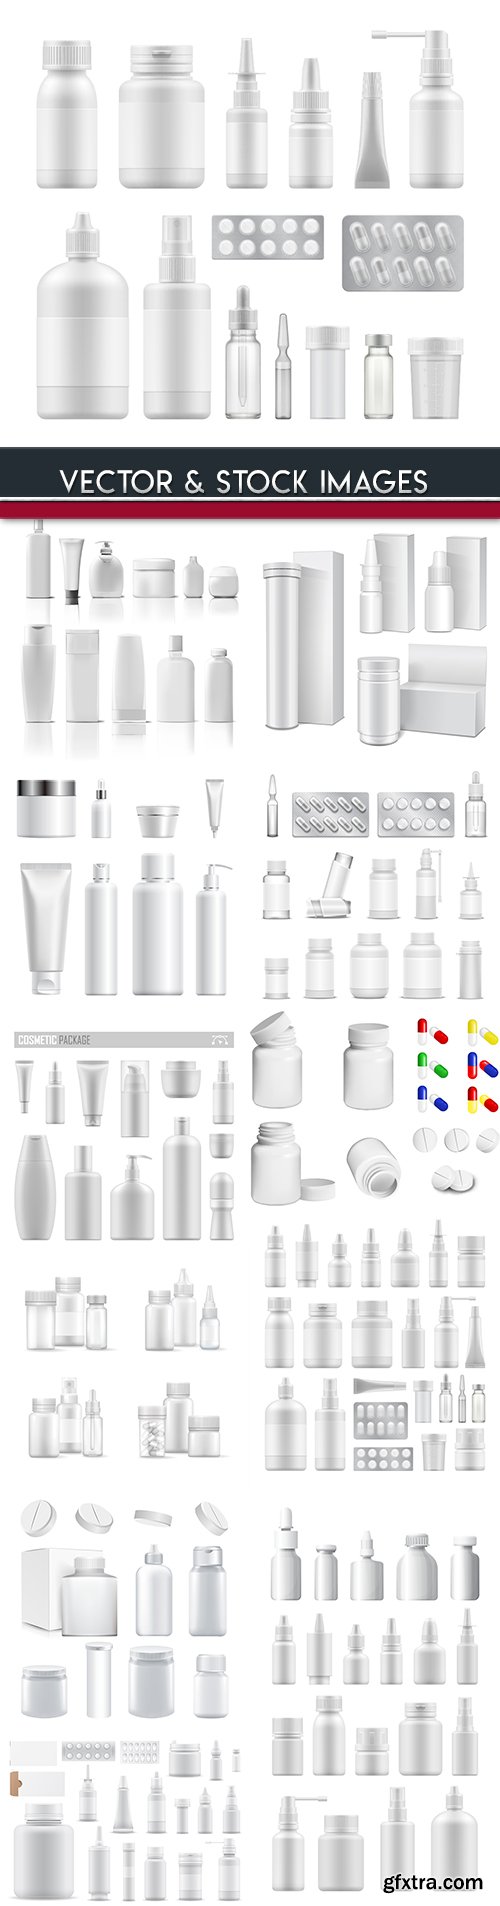 Plastic bottles and medicine package 3d illustration